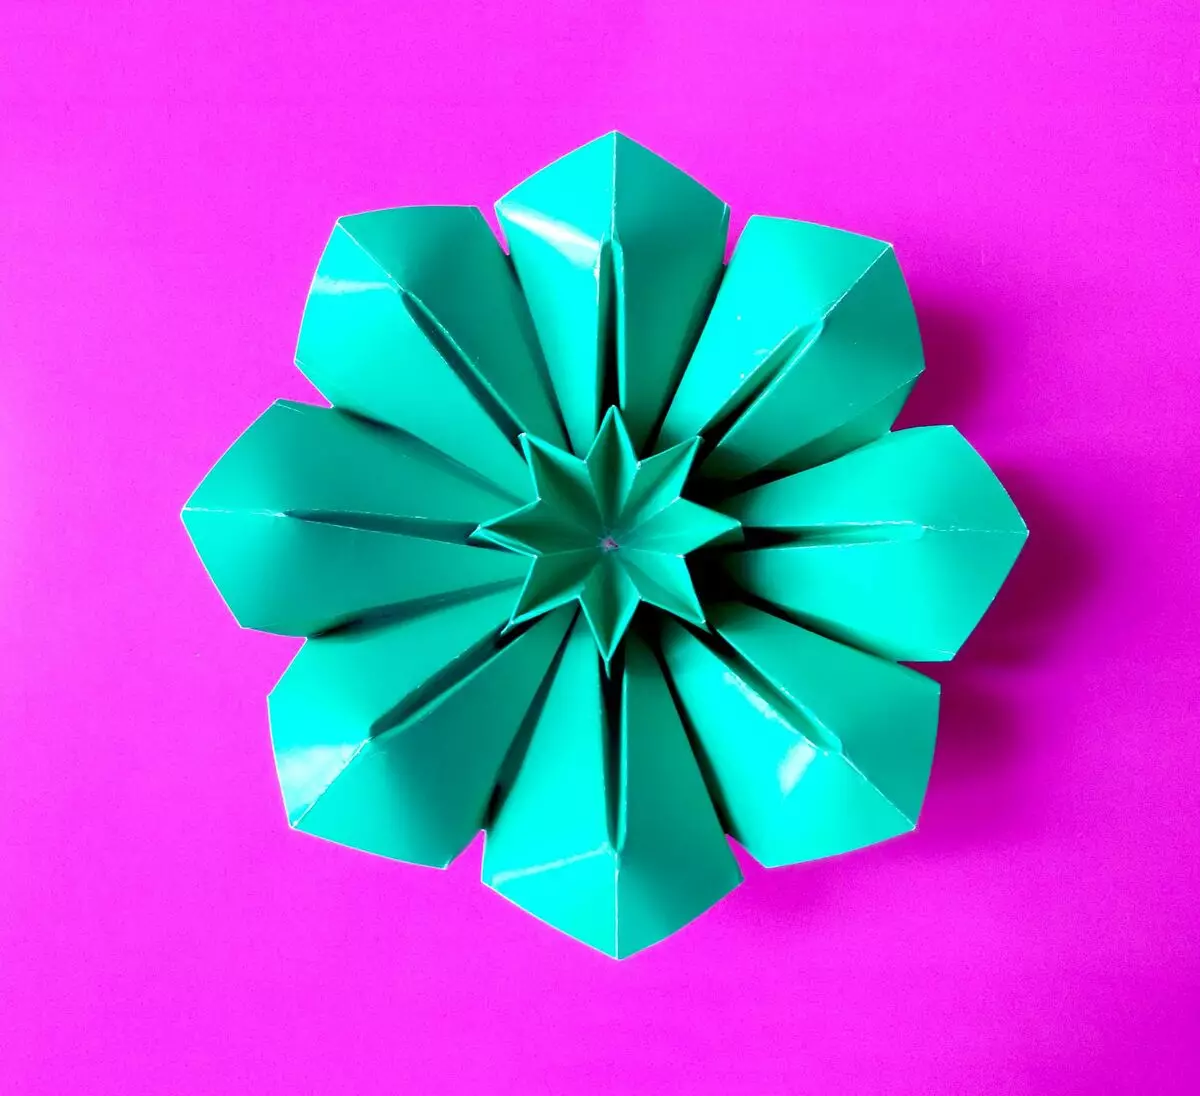 Reňkli kagyzdan origami: öz eliňiz bilen iki taraplaýyn kagyzdan nädip gül ýasamaly? Çagalar üçin senetalar, bir taraply kagyzdan ýeňil modeller 26933_2